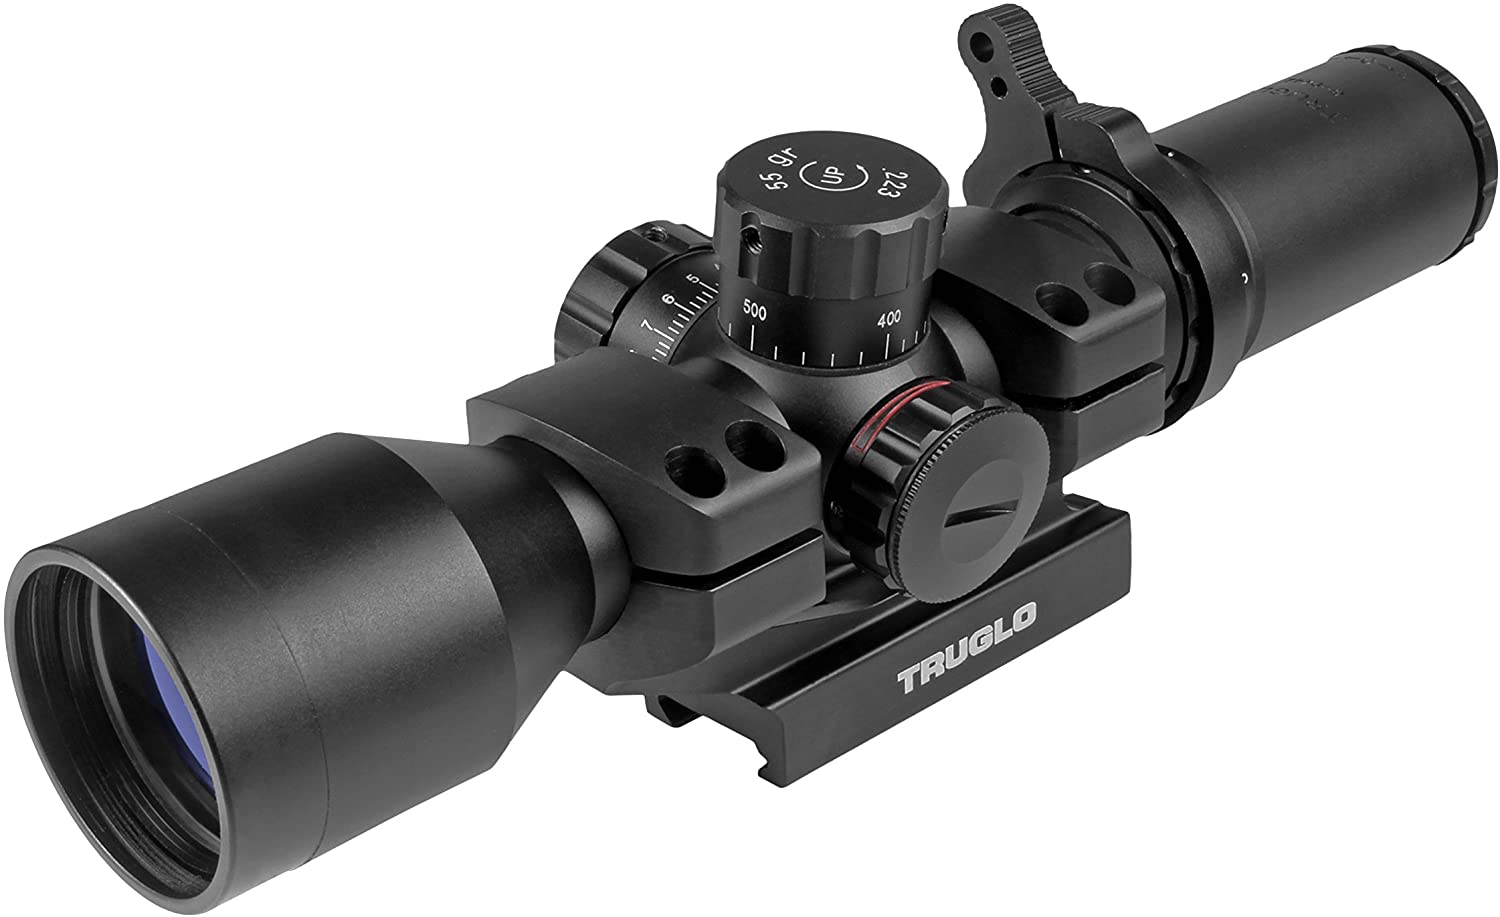 TRUGLO - TRU-BRITE 30 Series Illuminated Tactical Rifle Scope - Includes Scope Mount, 3-9x 42mm, Black